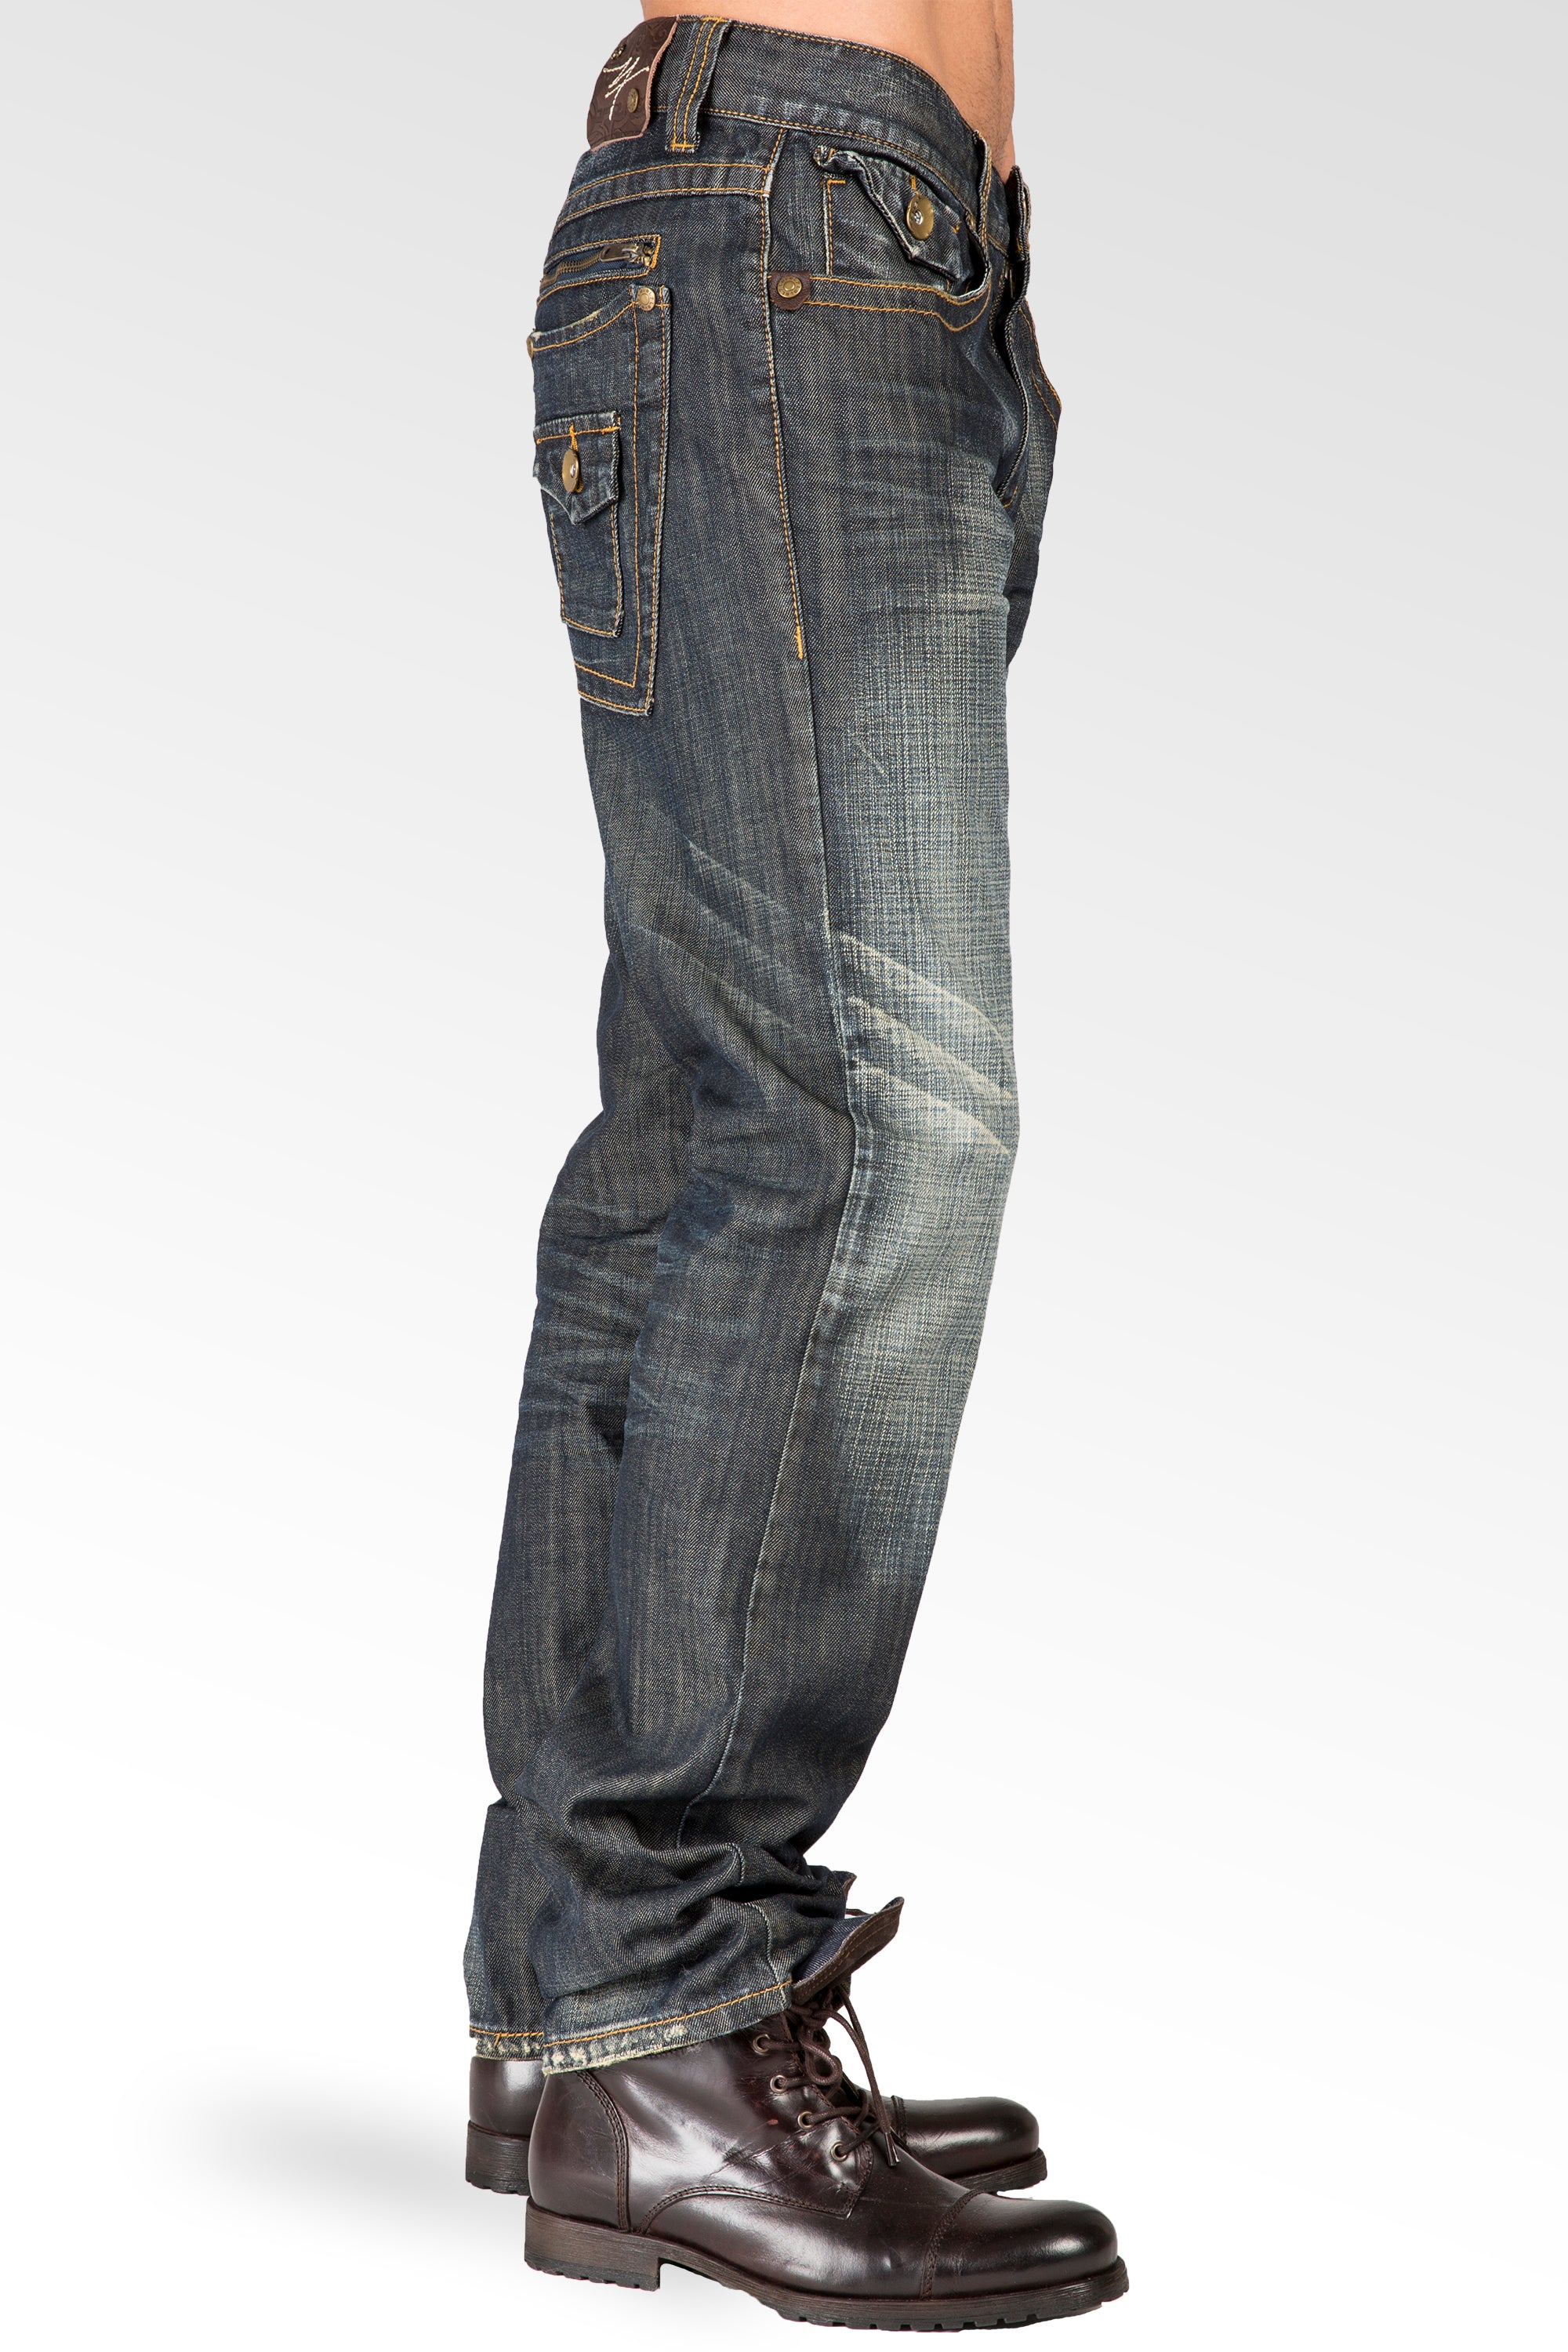 Level 7 Men's Relaxed Straight Leg Premium Denim Jeans